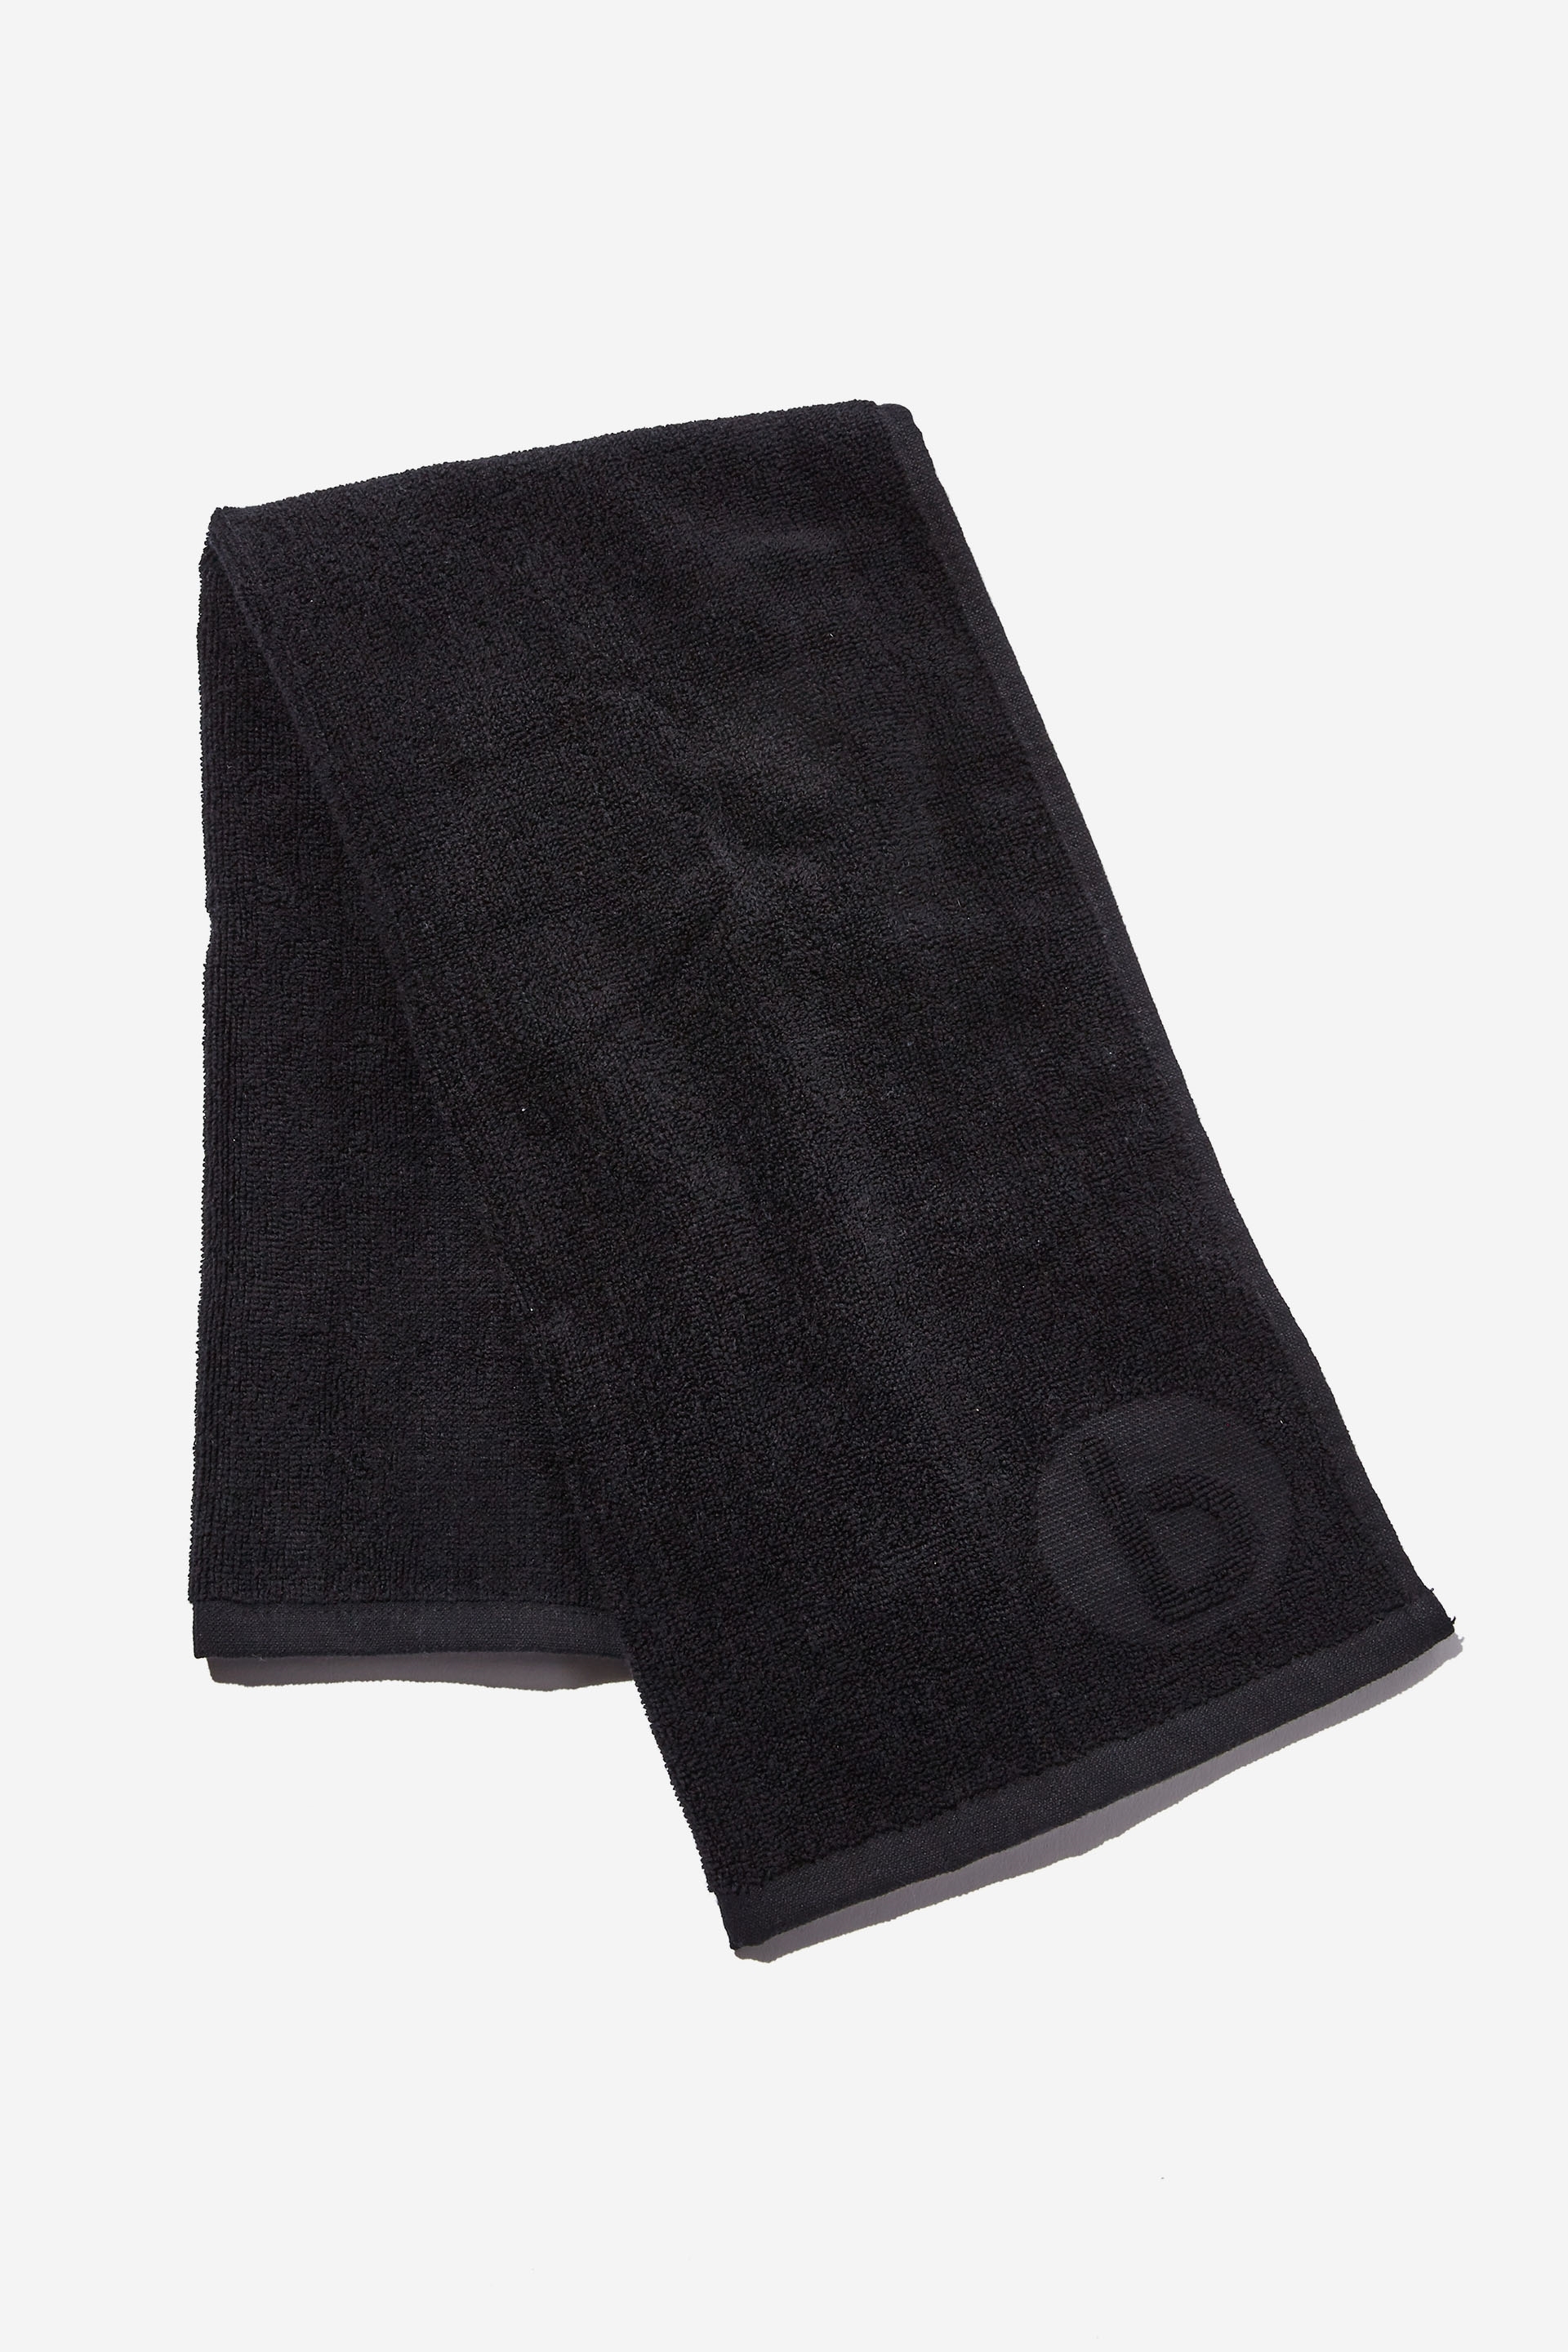 Keep It Cool Gym Towel - Black